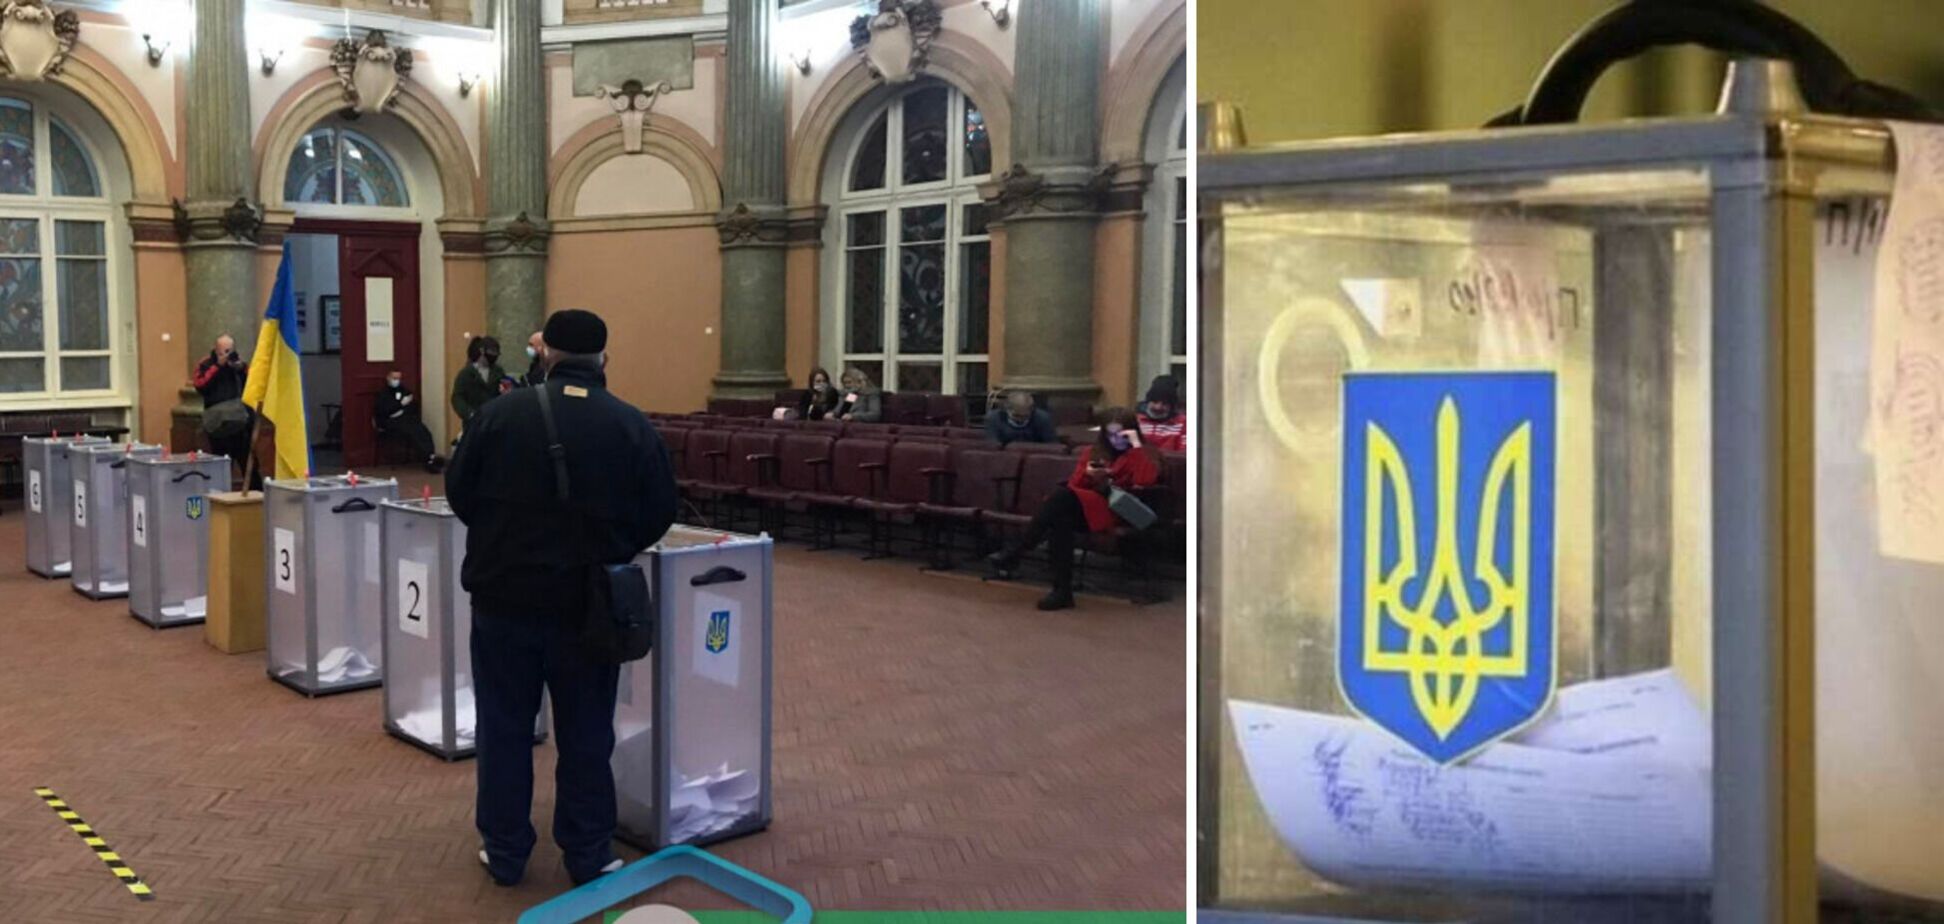 Наблюдателей 'Опоры' не было на участках в Харькове, где якобы обнаружили фальсификации, — представители Терехова